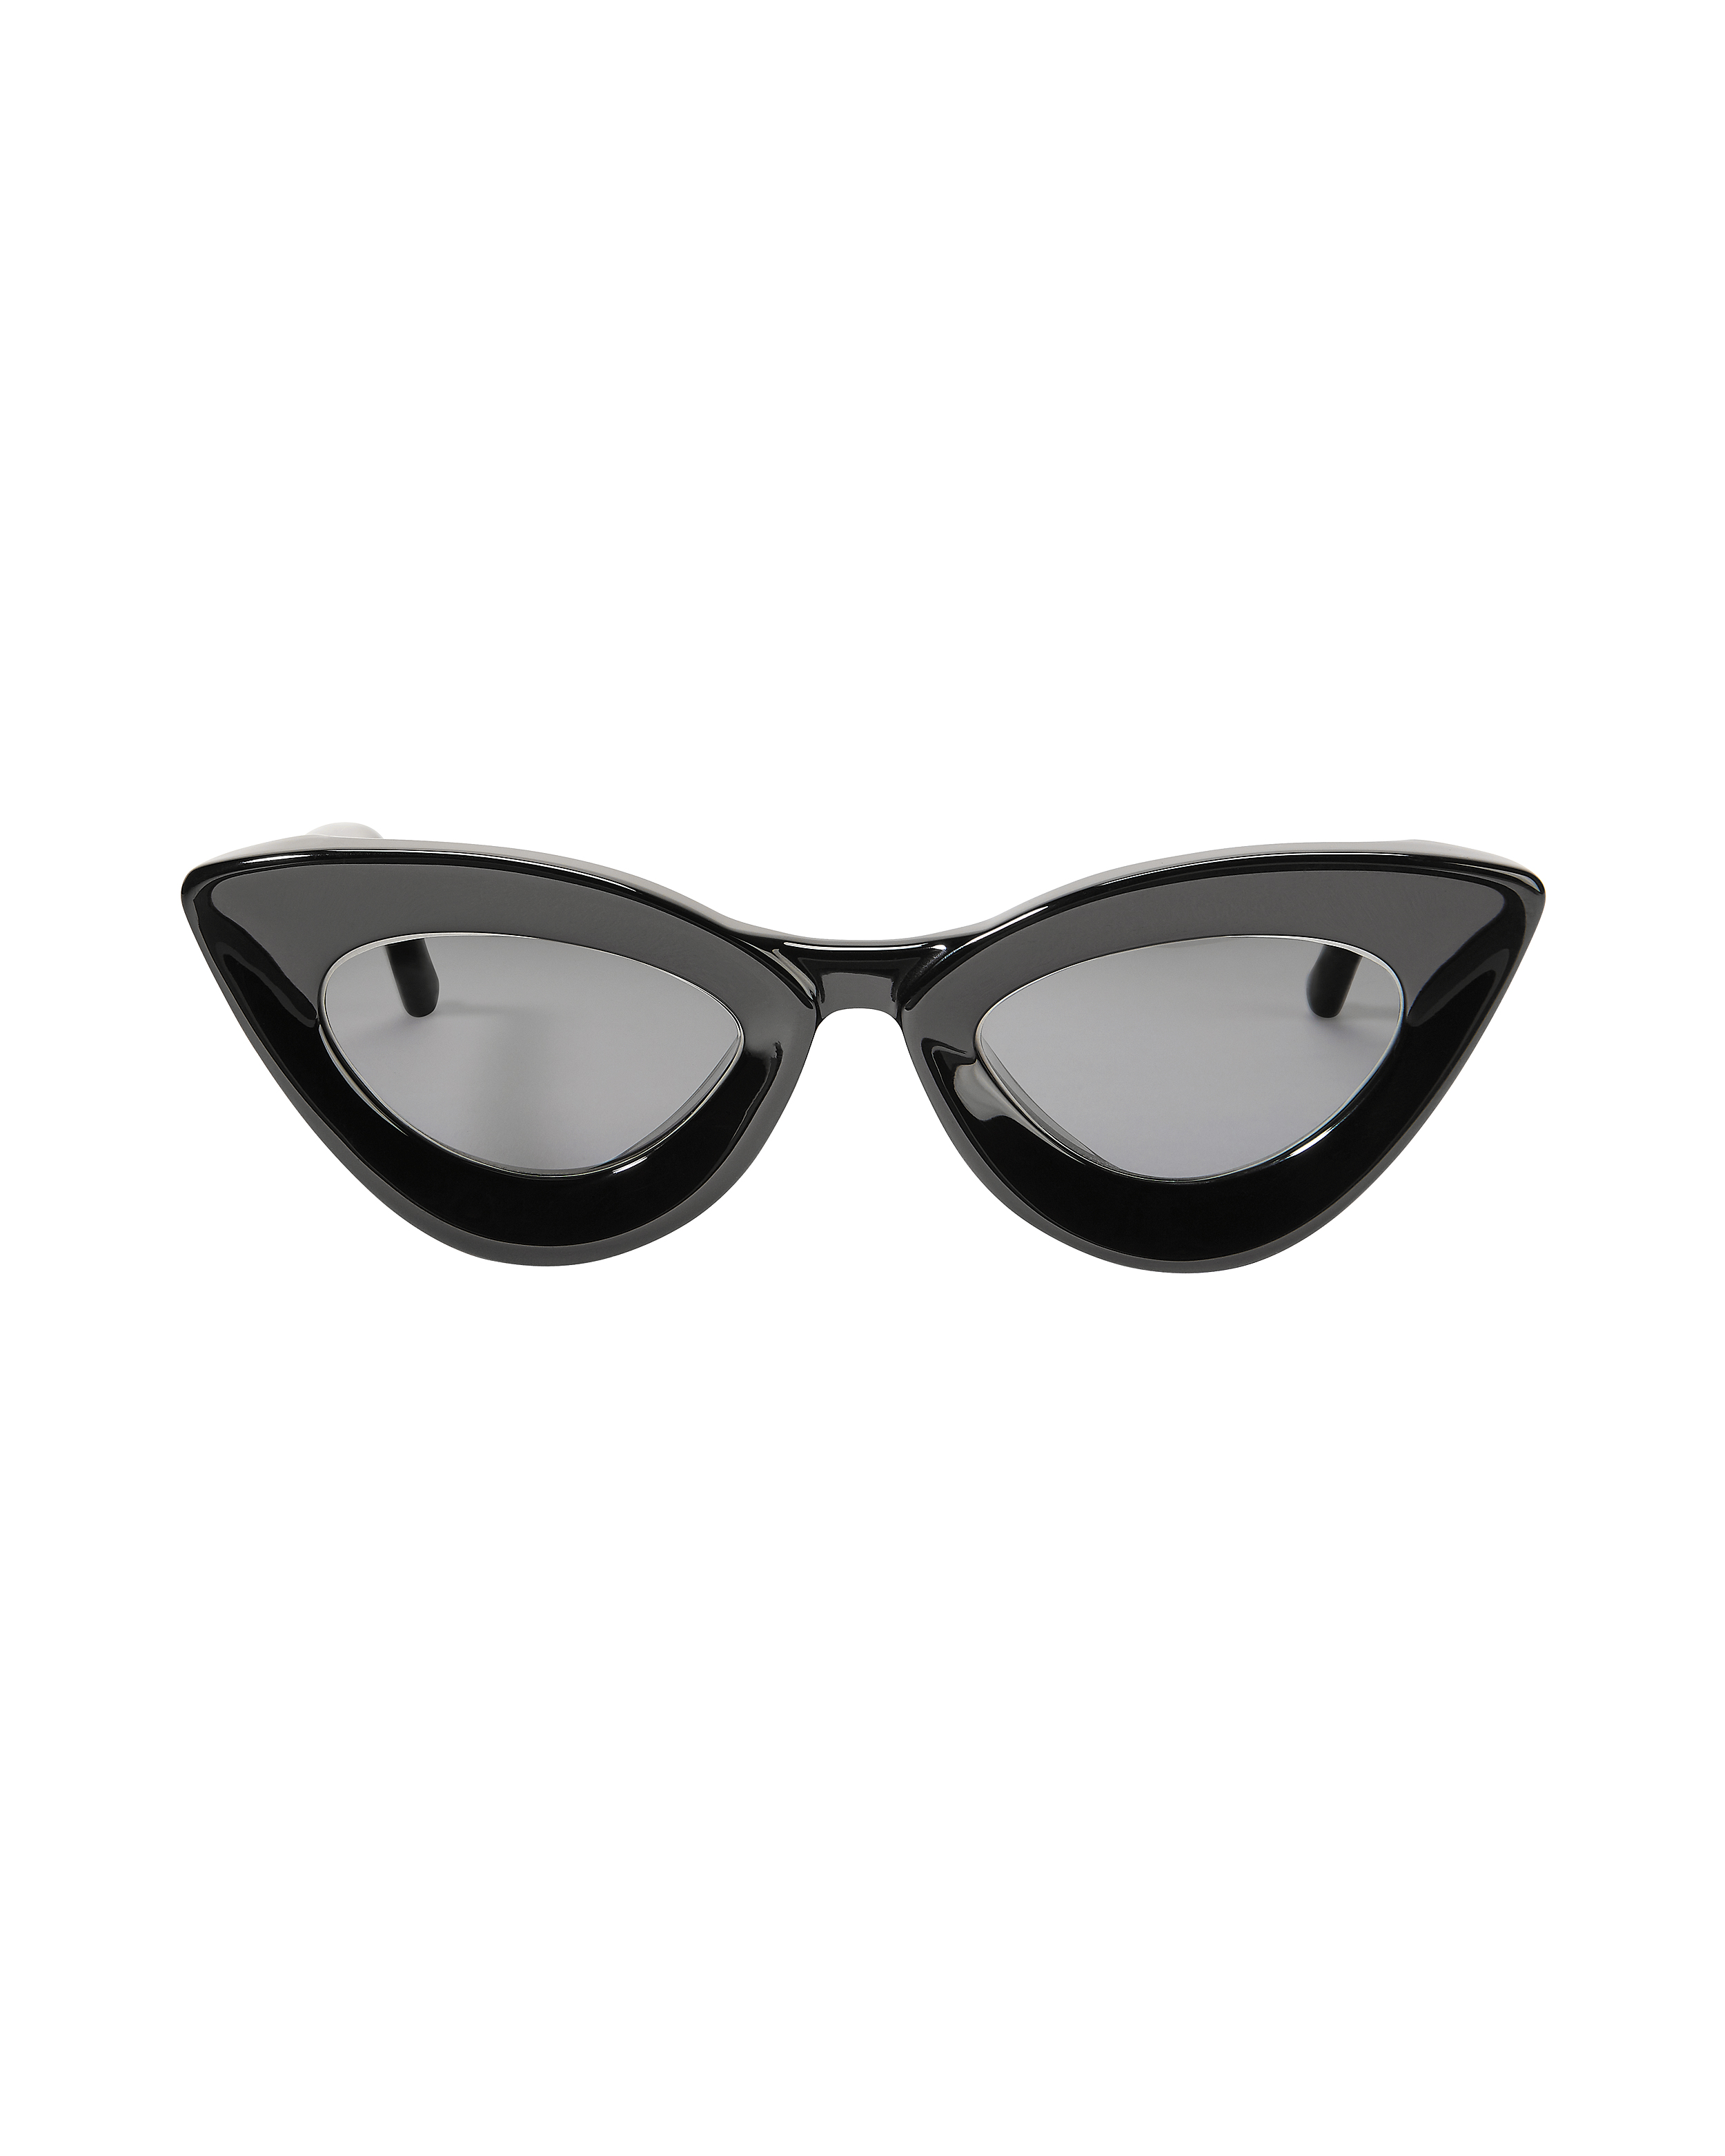 GREY ANT Iemall Cat Eye Sunglasses,IEPB